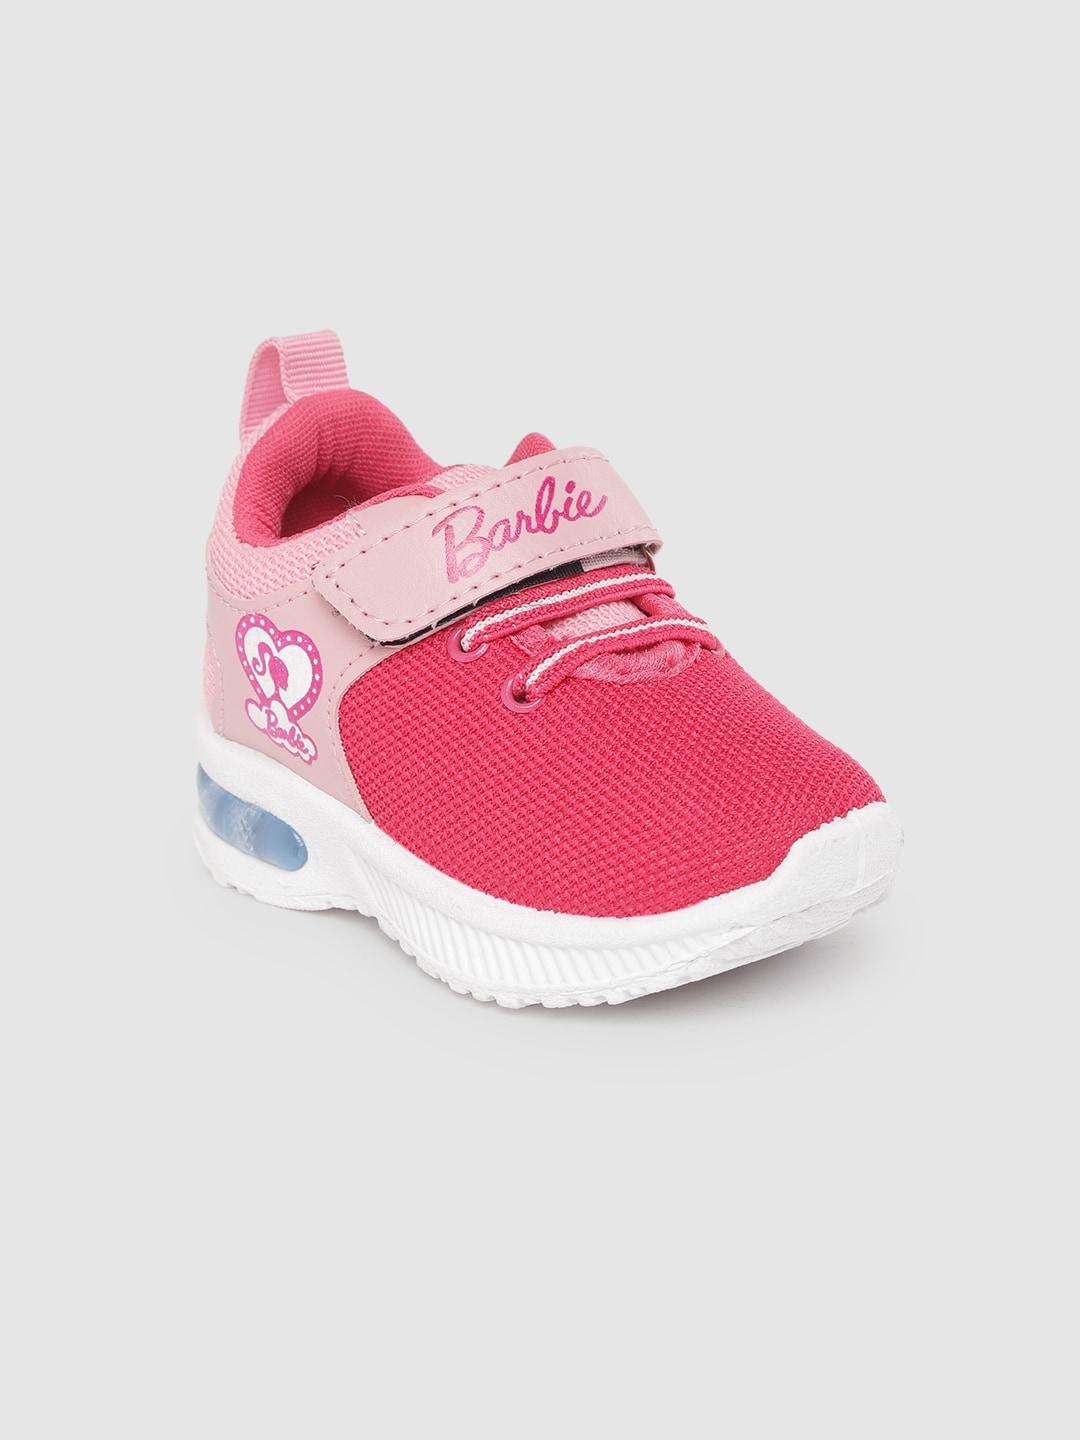 toothless-girls-pink-mesh-barbie-walking-shoes